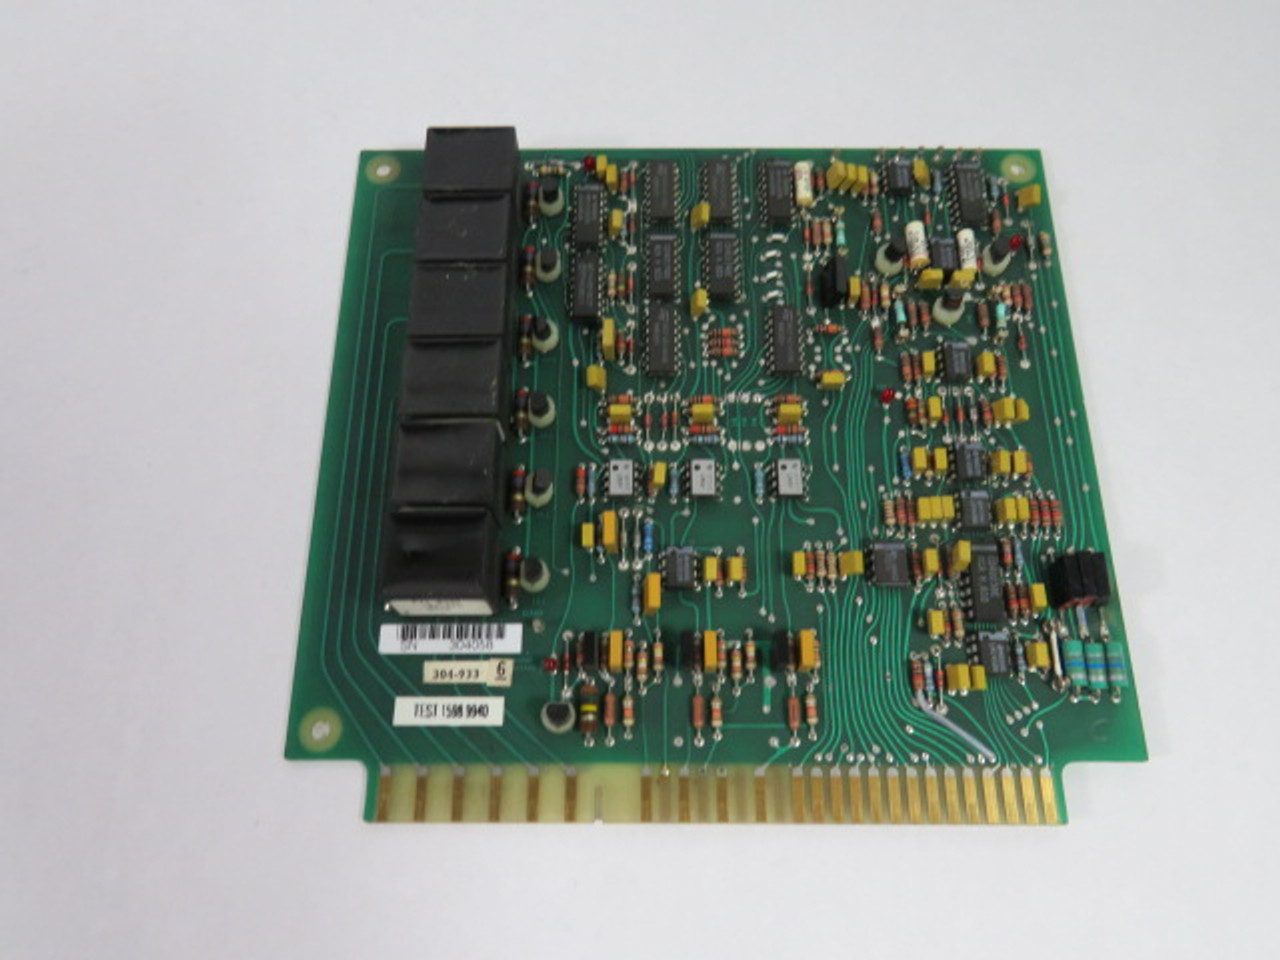 Unico 500-045-B 304-933-6 Control Circuit Board USED